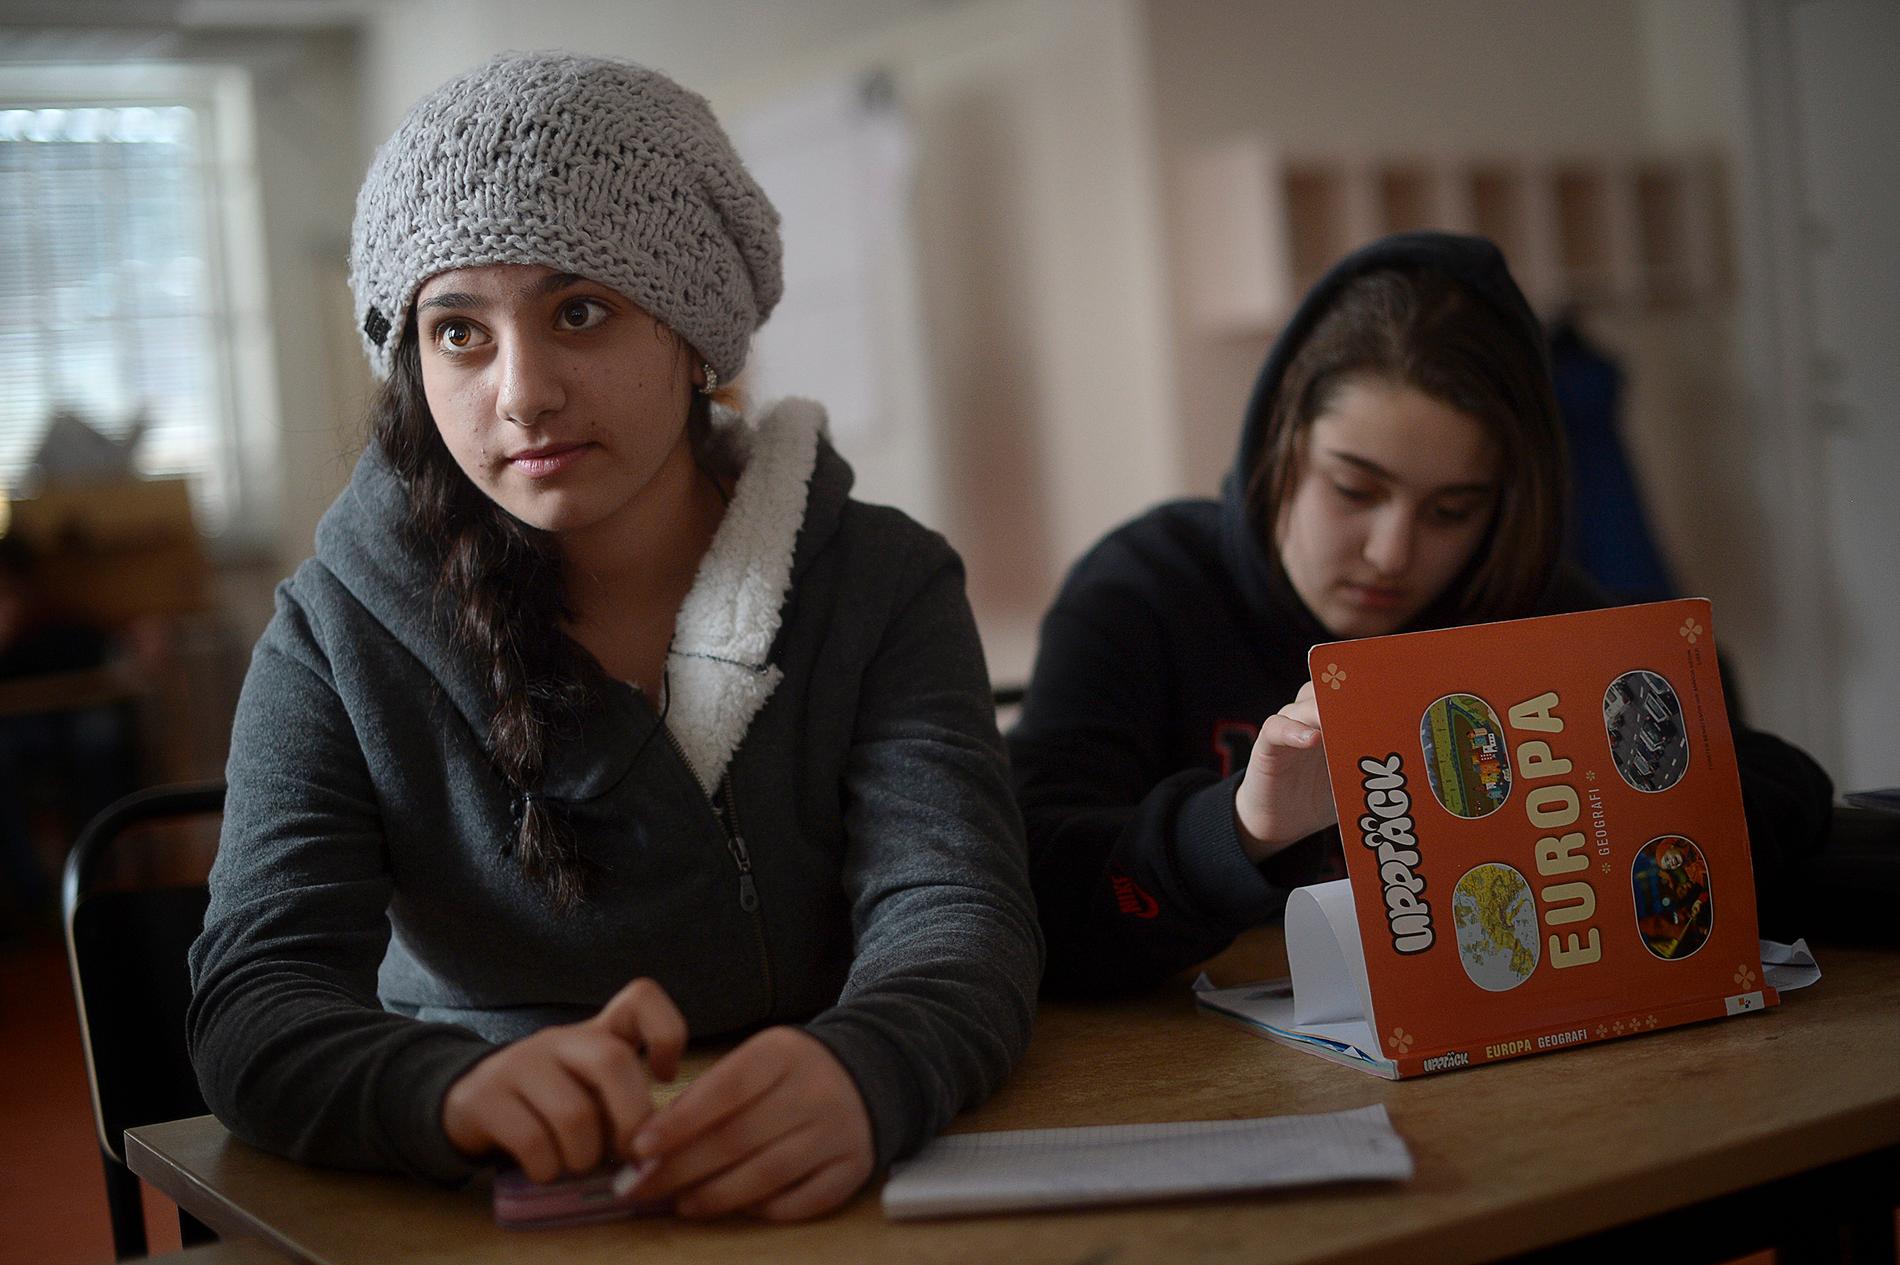 Rita Nassar, 15, vill bli läkare i framtiden. ”Matematiken i Syrien var mycket, mycket svår, vi hade mycket läxor. Men man lär sig lika mycket här i Sverige, vi har haft biologi, fysik, kemi och allt som vi hade i Syrien”.